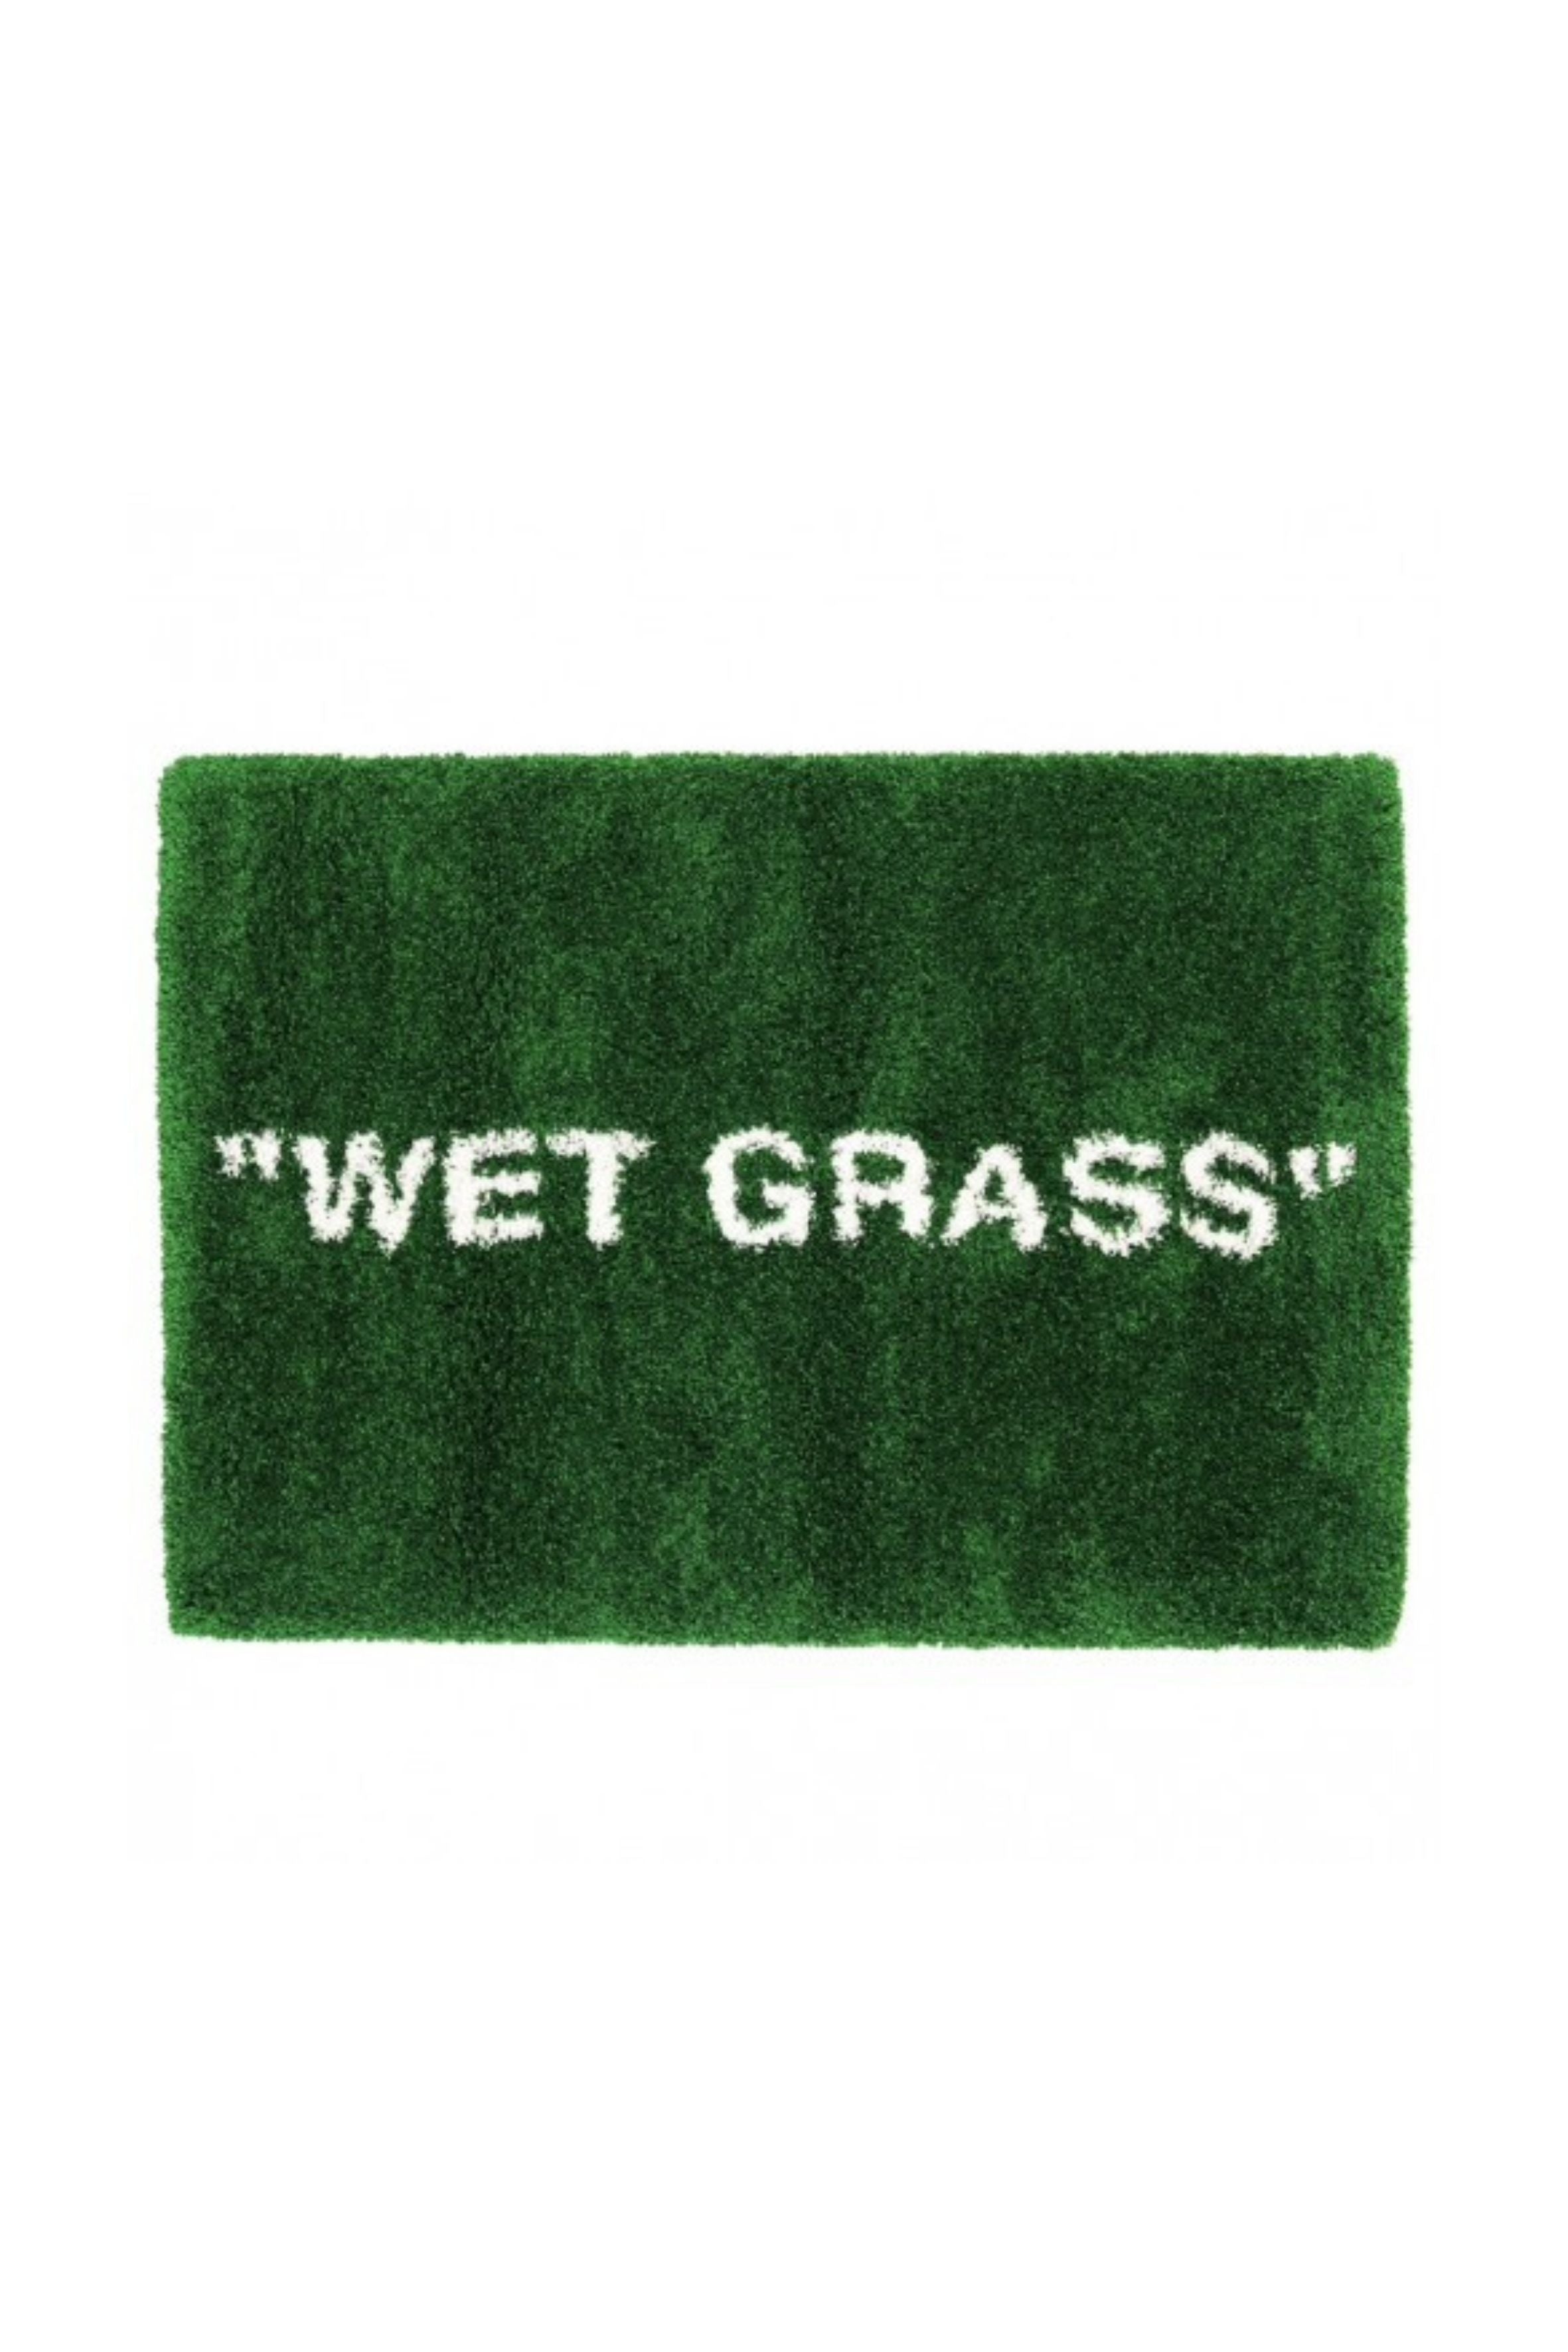 Wet Grass Wet Grass Rug Wetgrass Wet Grass Pattern Rug 